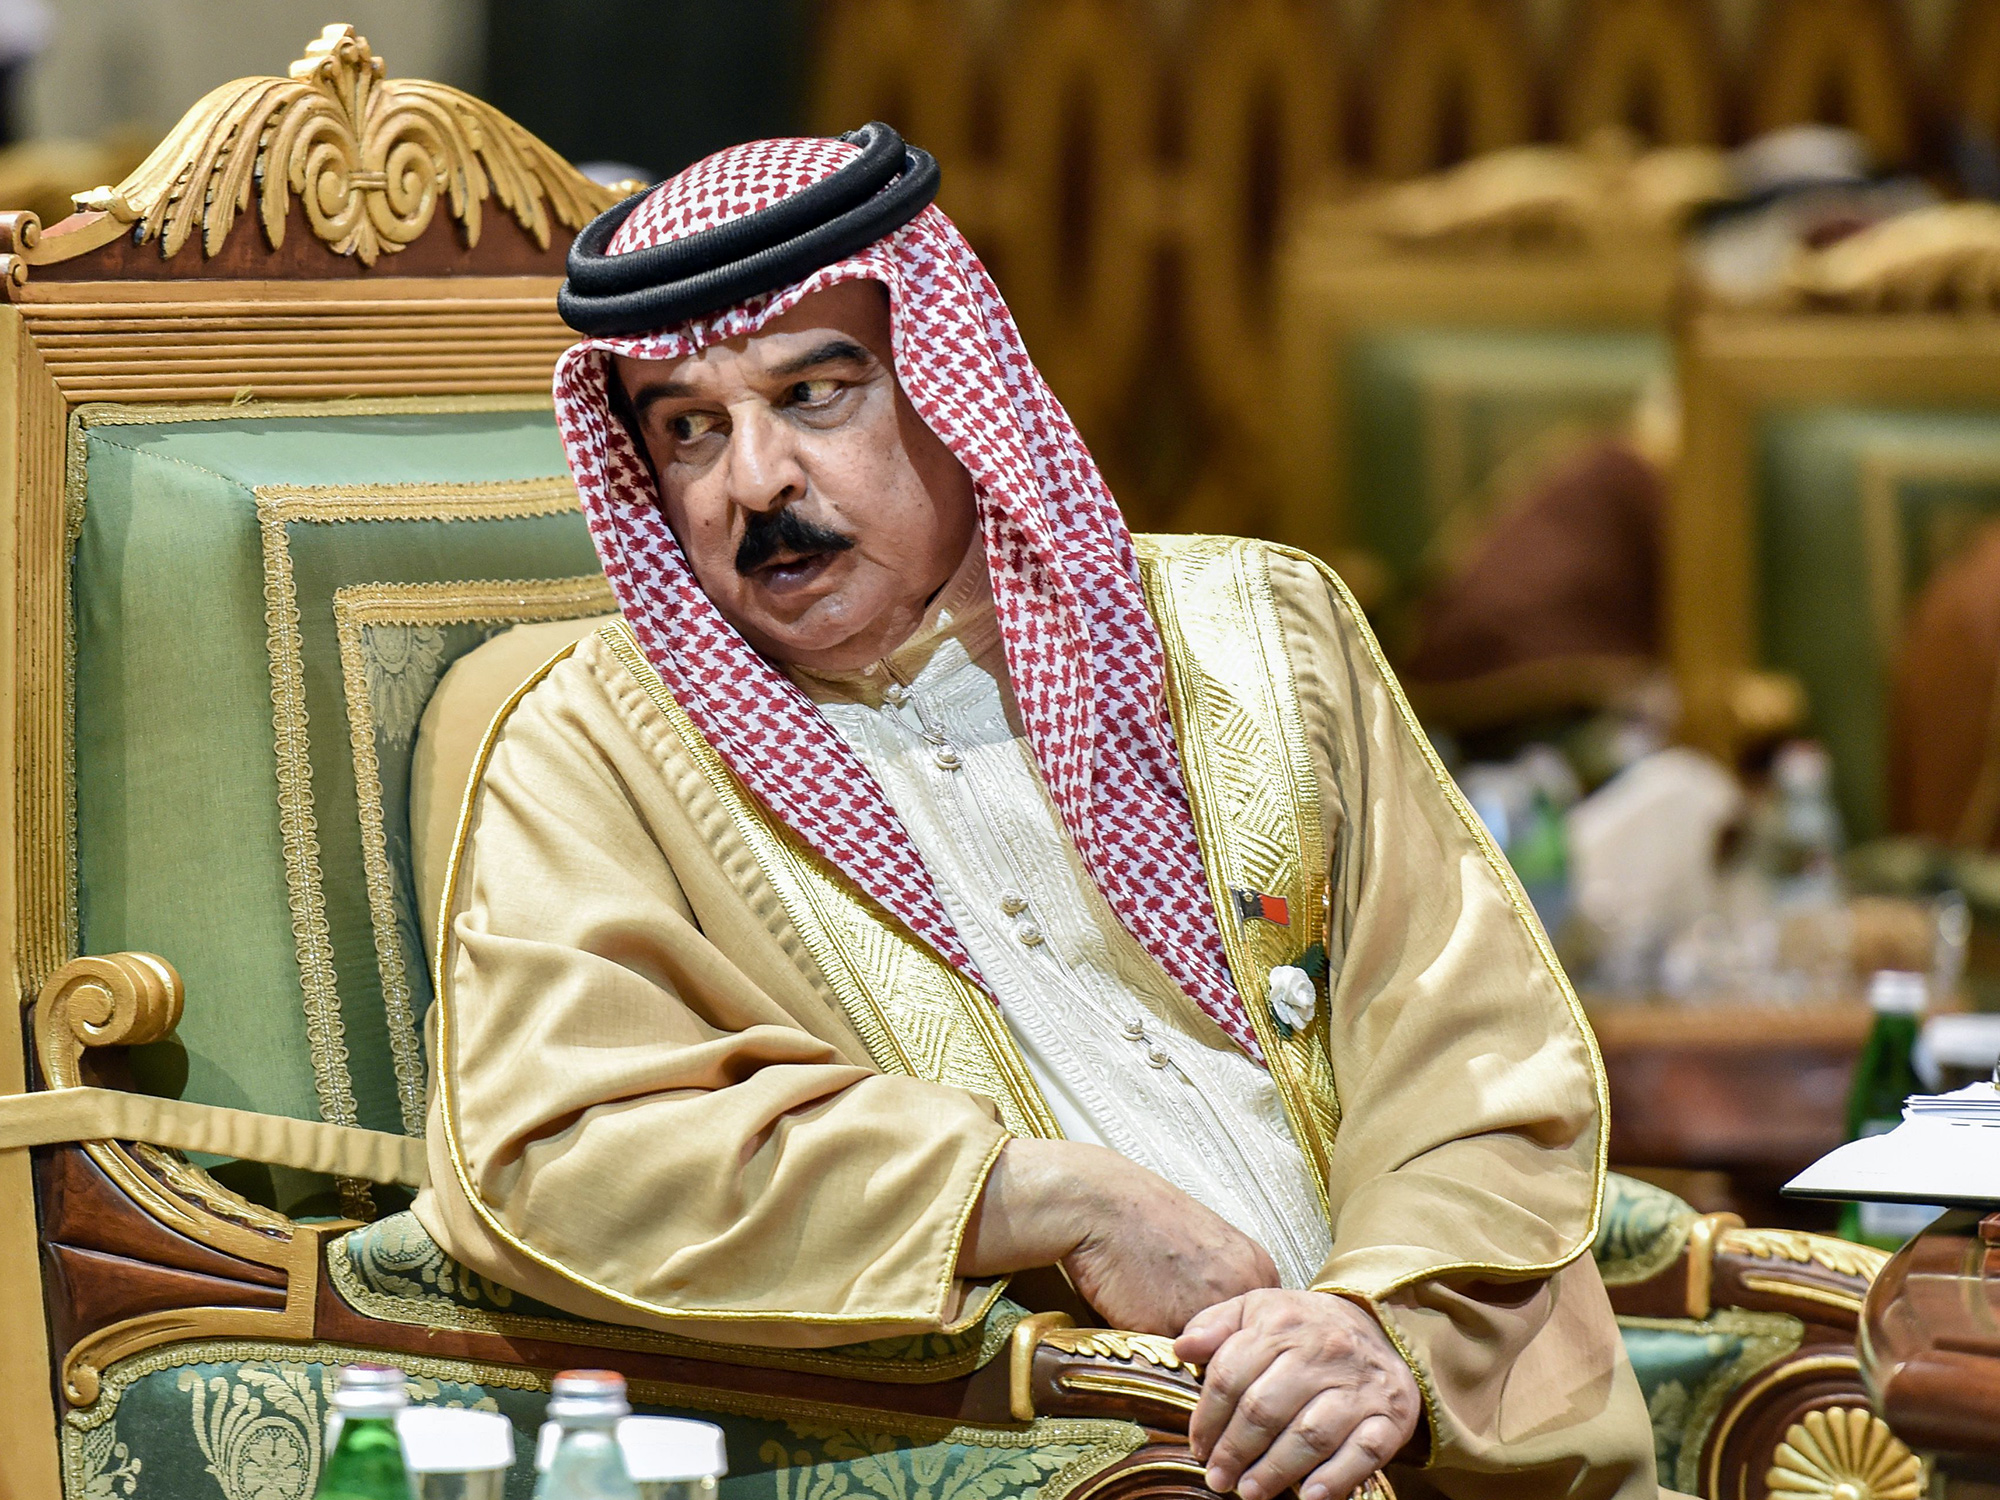 King Hamad Bin Isa Al Khalifa